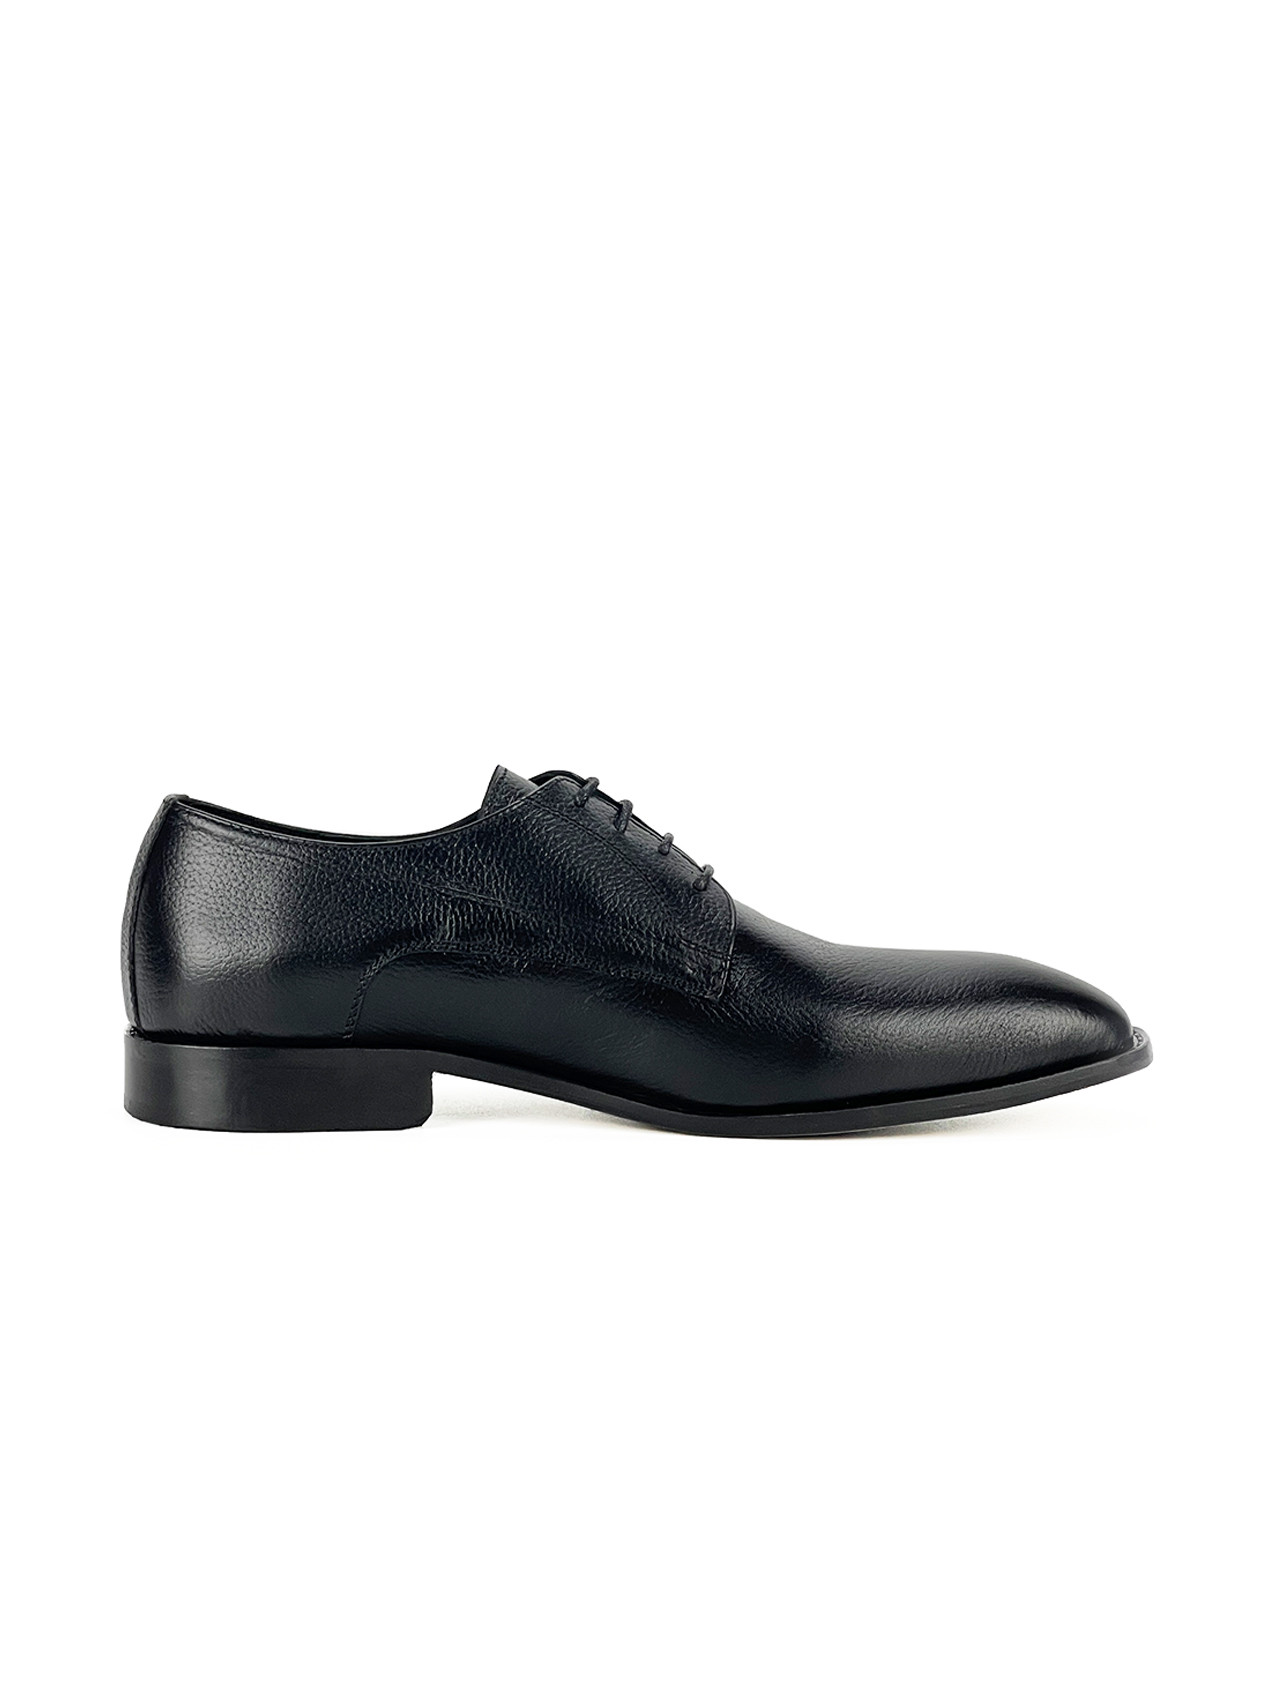 Chaussure hommes MT 100% CUIR, 40, Noir